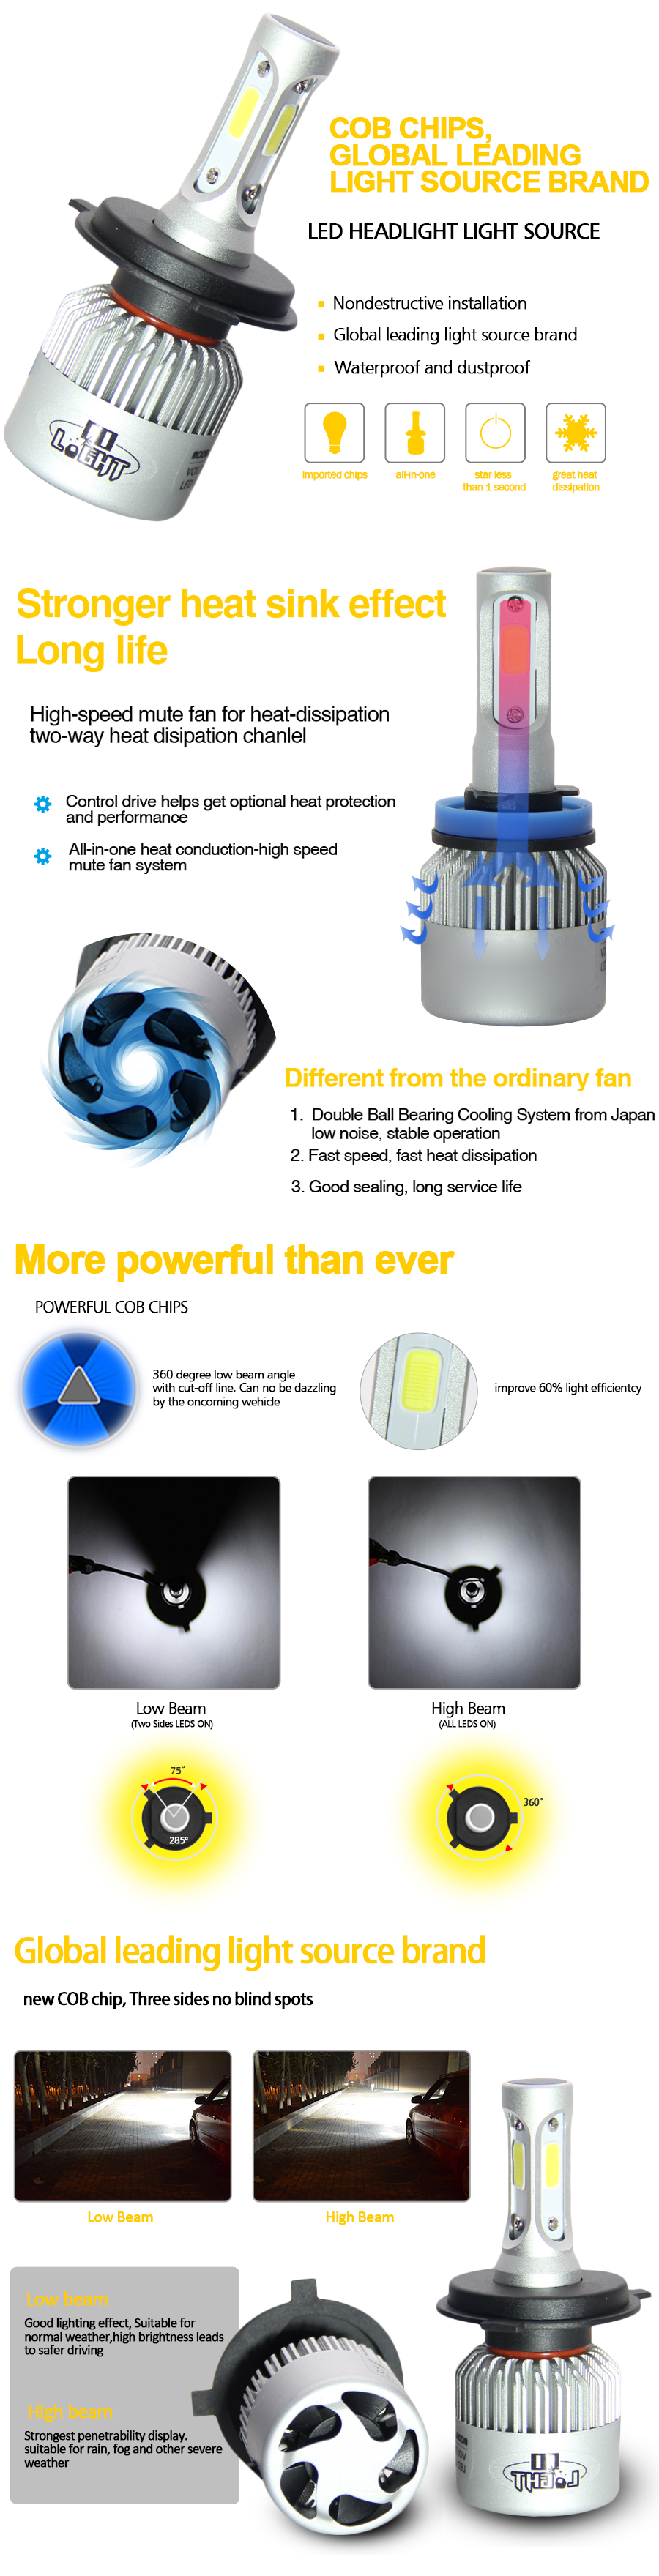 led headlight S2-COB advantages